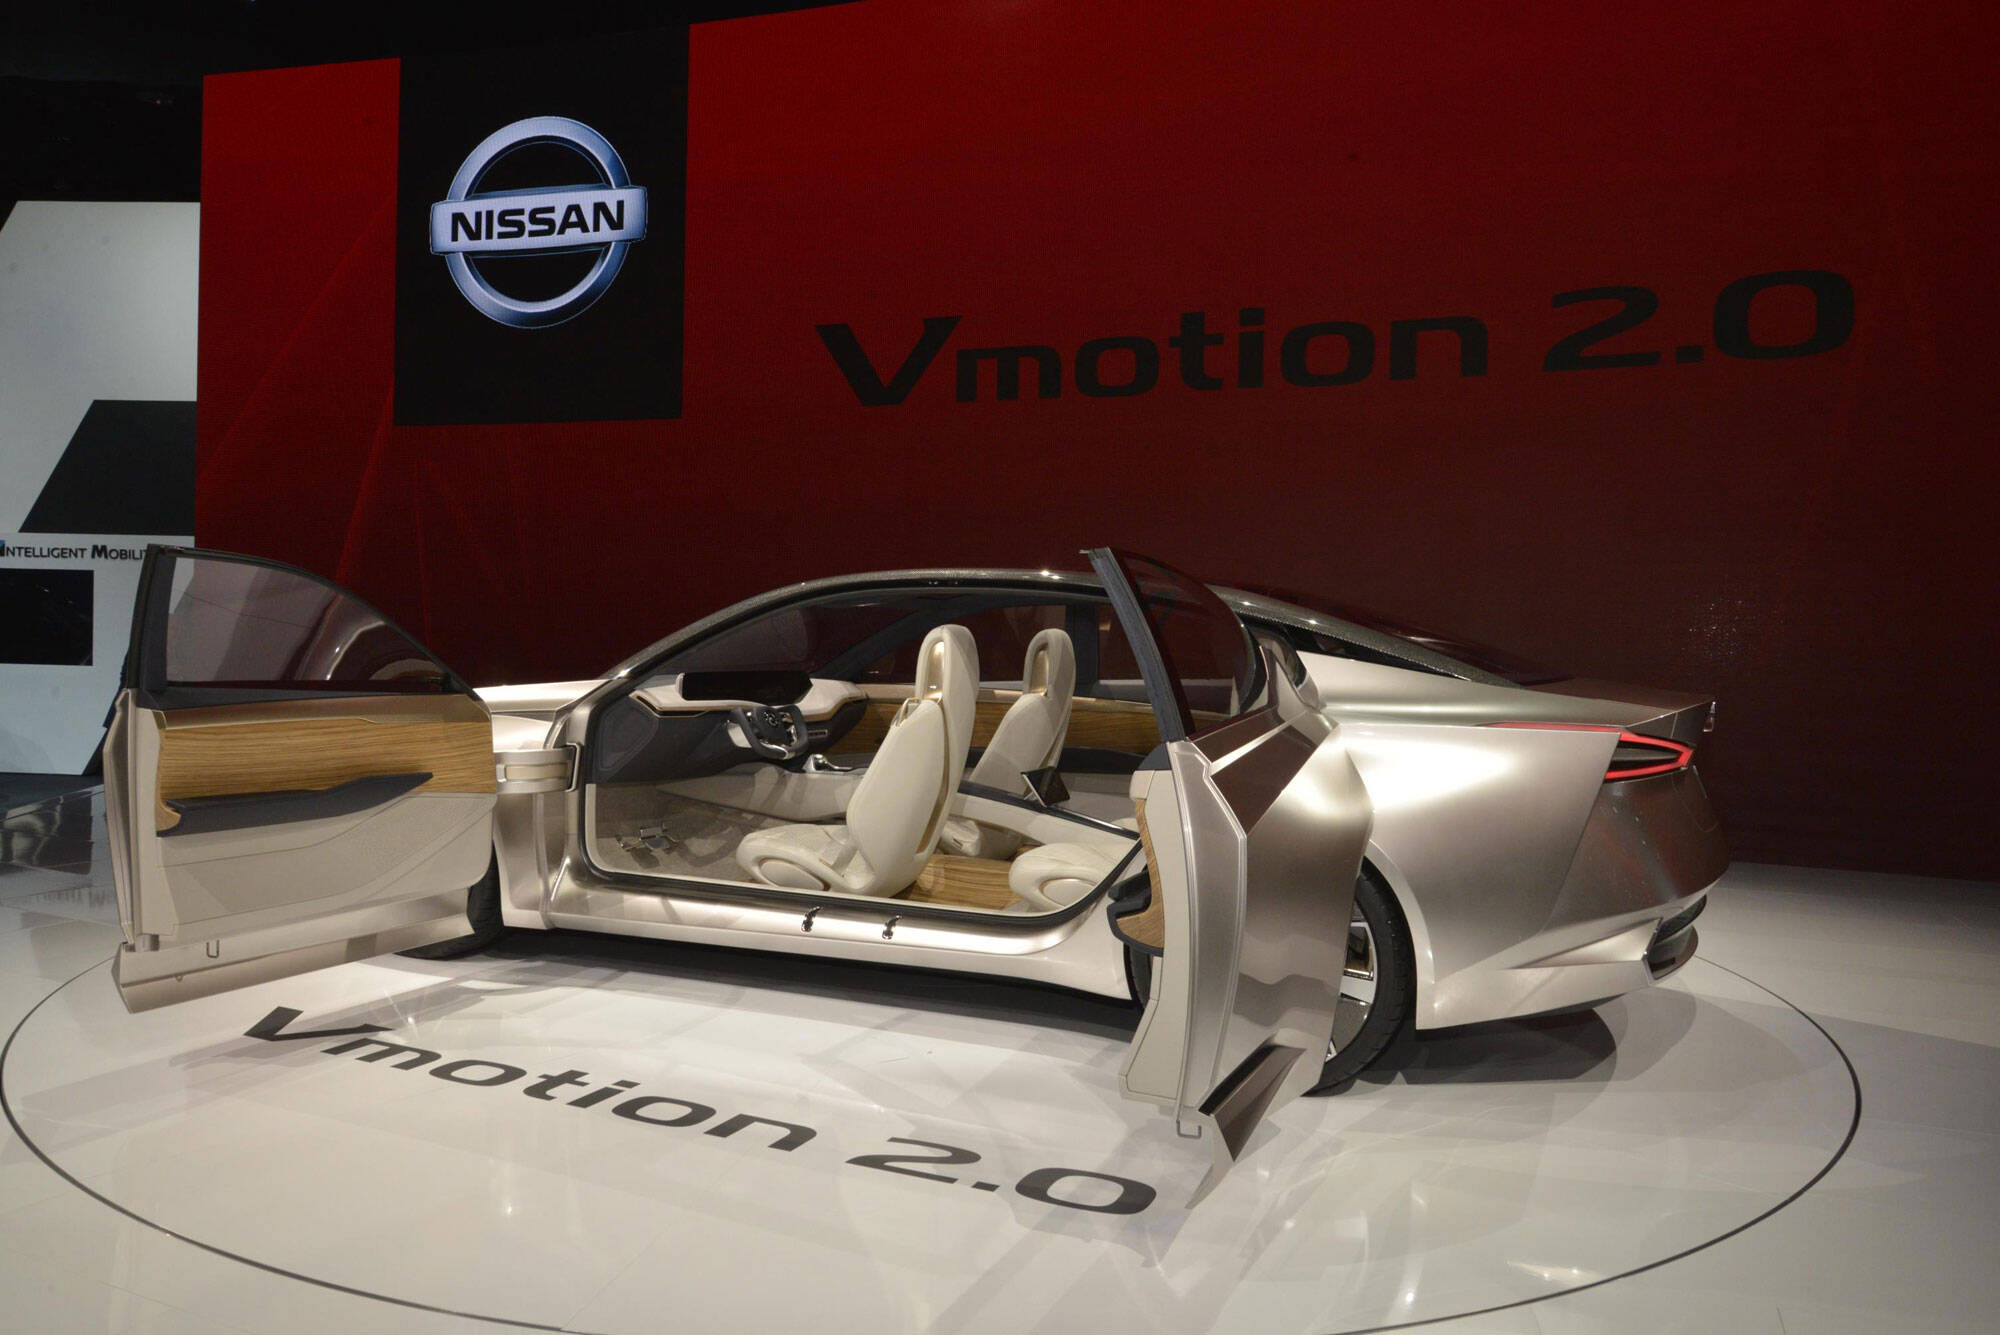 Nissan Vmotion 2.0. Foto: Divulgação/Newspress